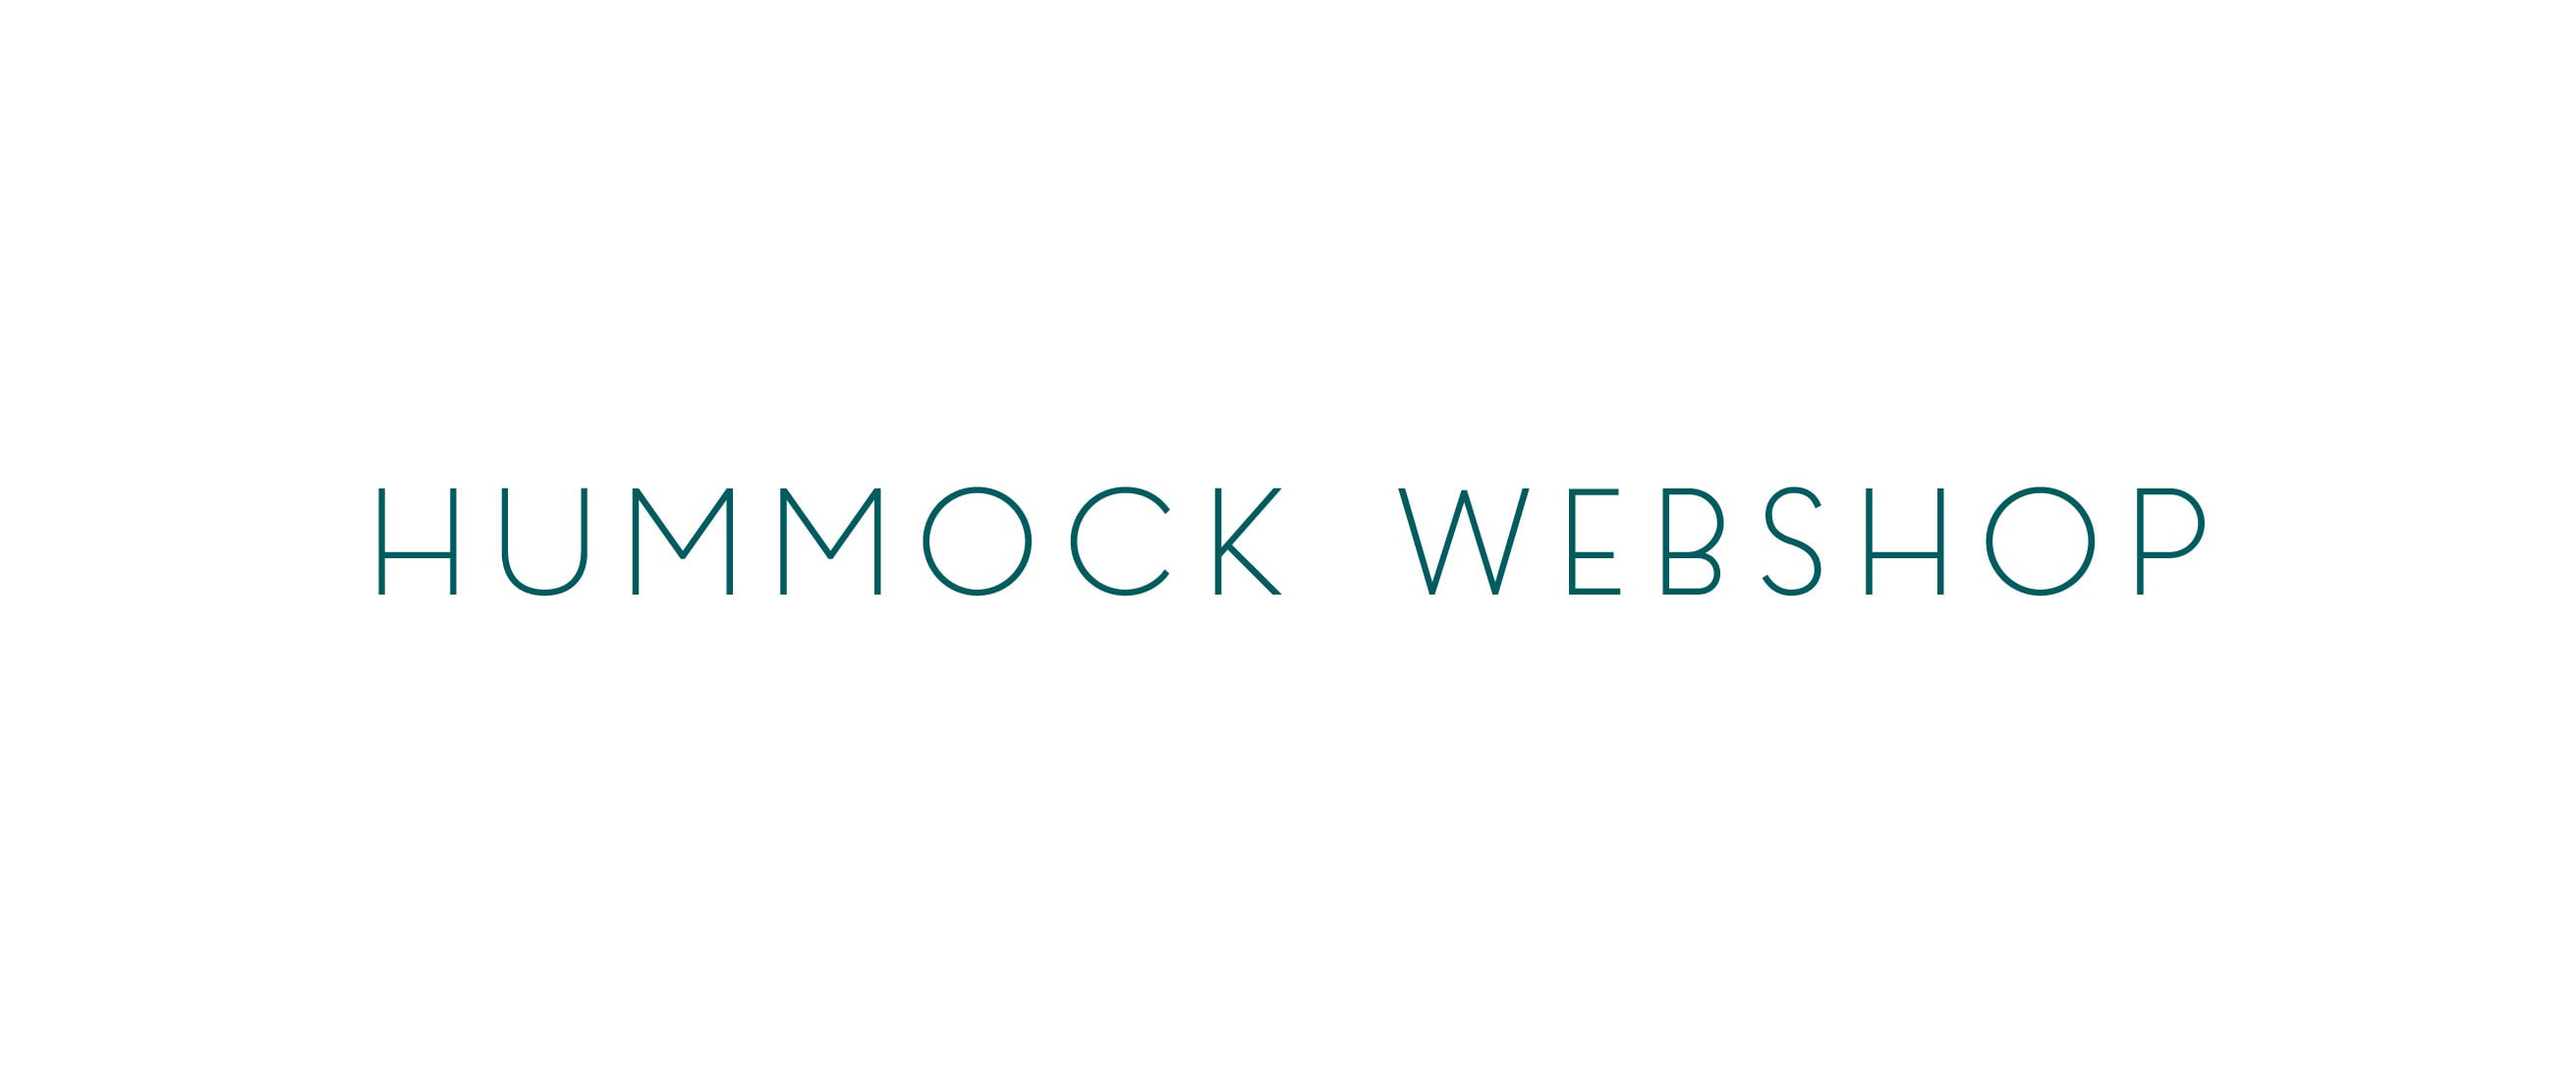 HUMMOCK WEBSHOP